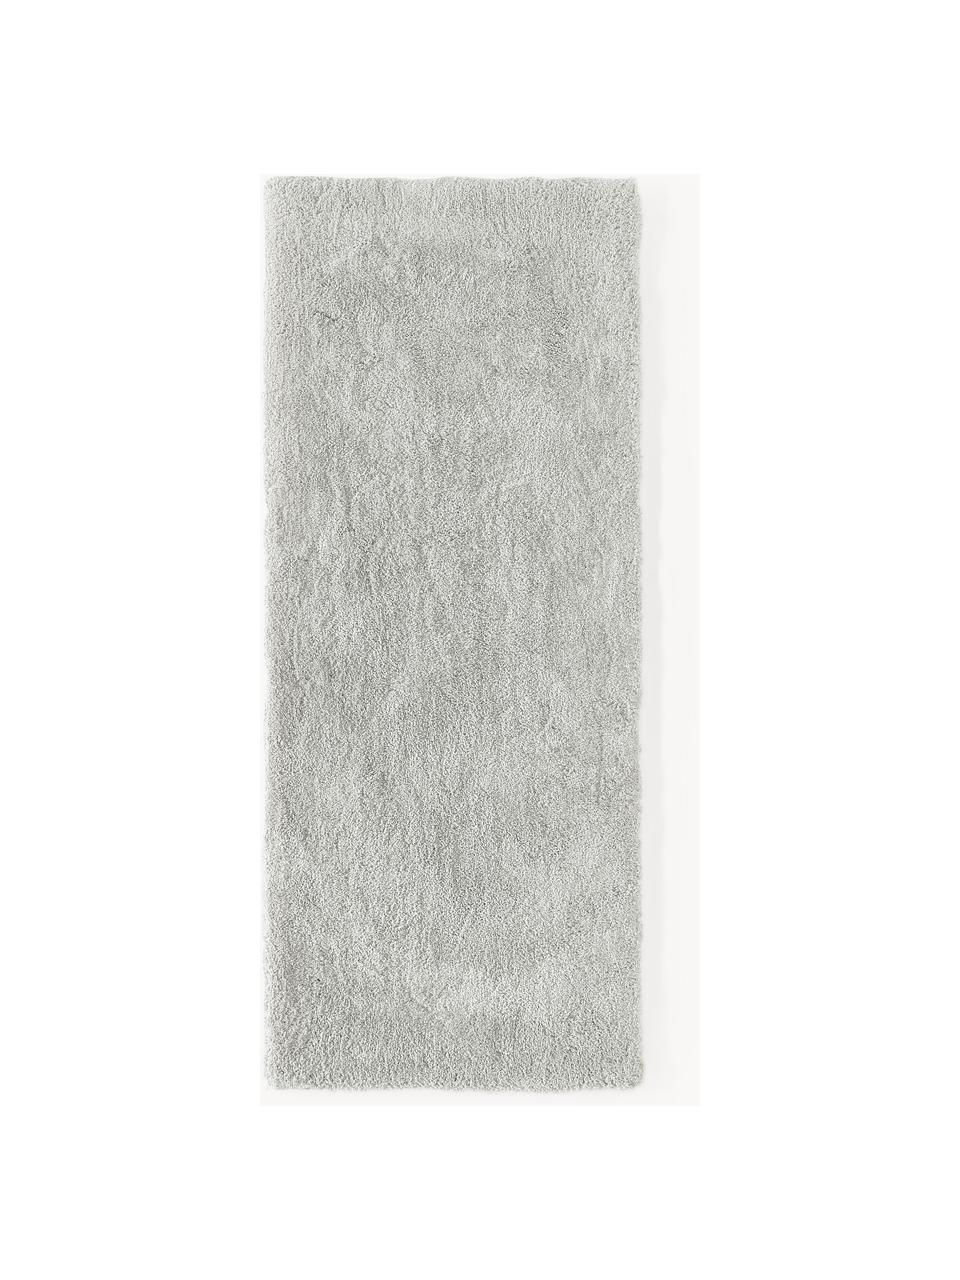 Načechraný běhoun s vysokým vlasem Leighton, Světle šedá, Š 80 cm, D 200 cm